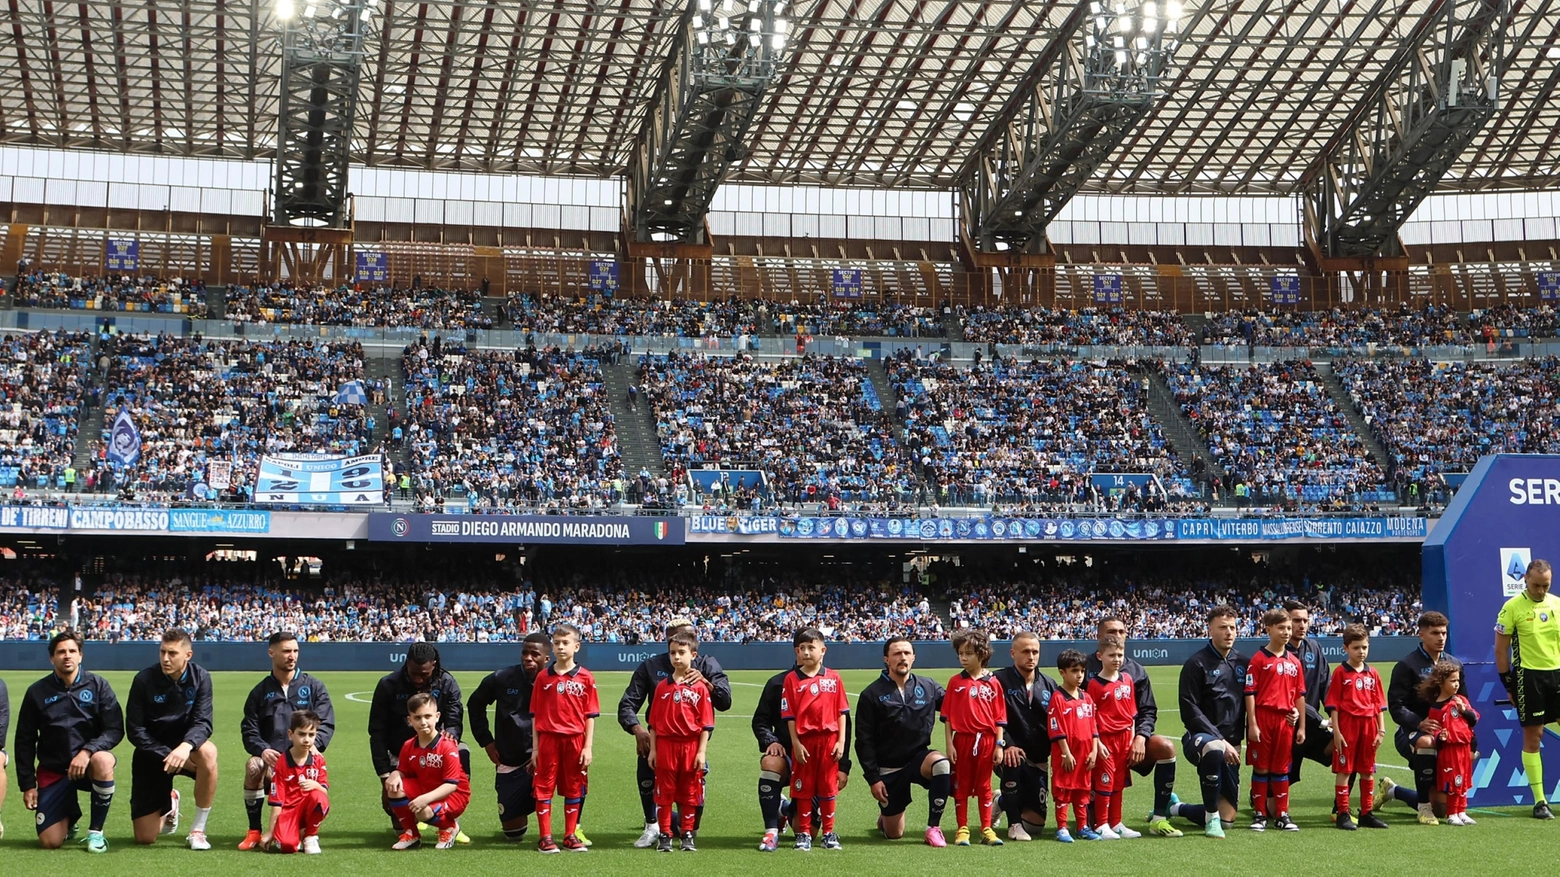 Il Napoli si inginocchia per protesta contro il razzismo sul campo dello stadio Maradona (Ansa)